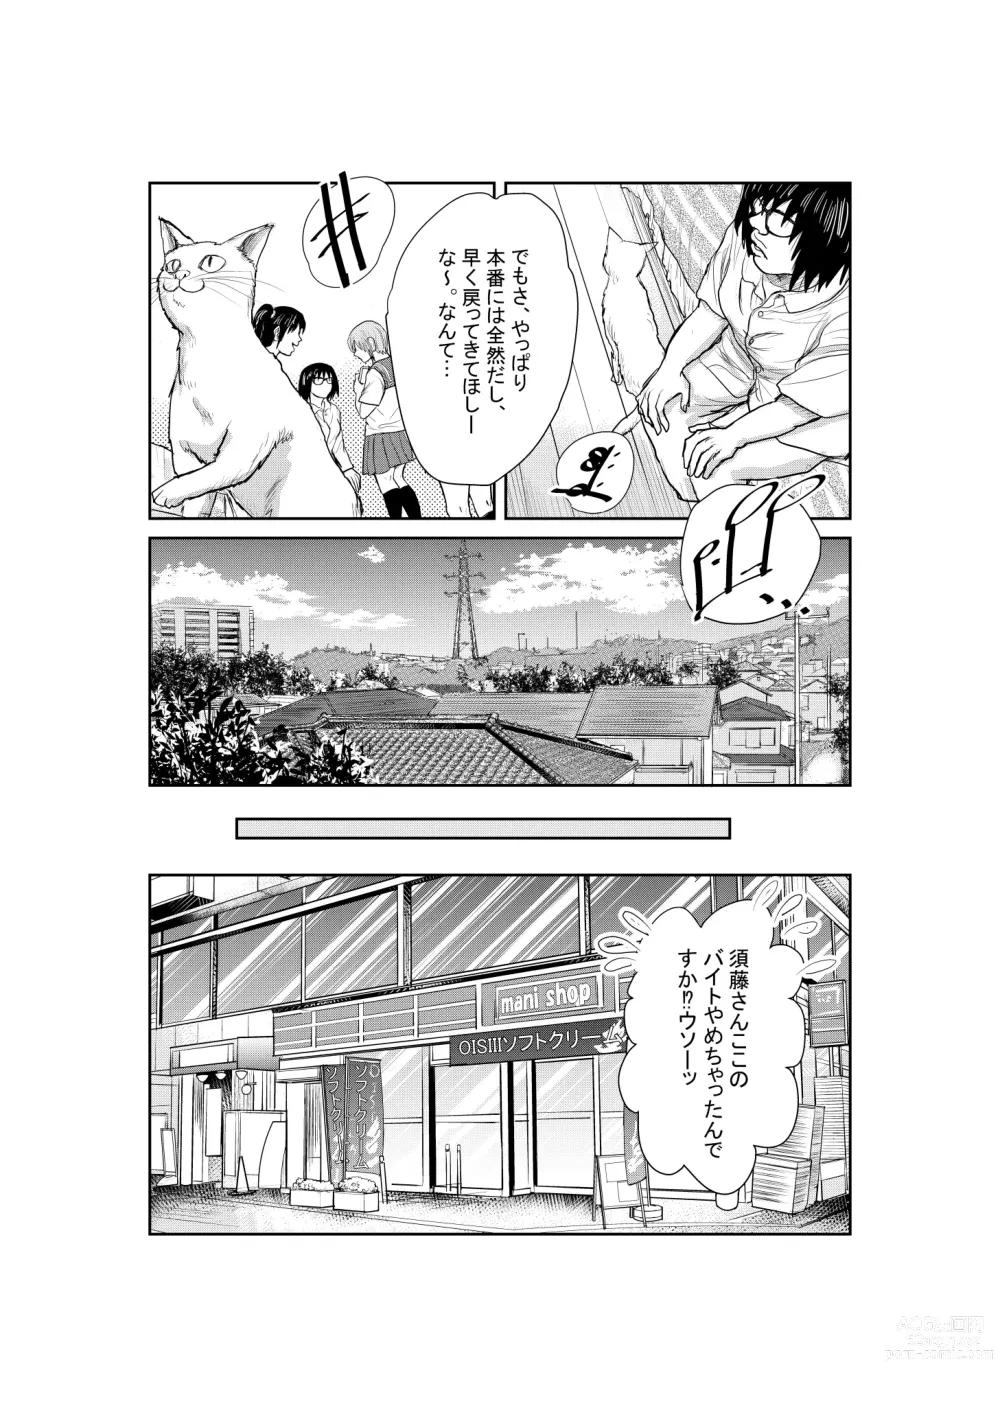 Page 50 of doujinshi Neko